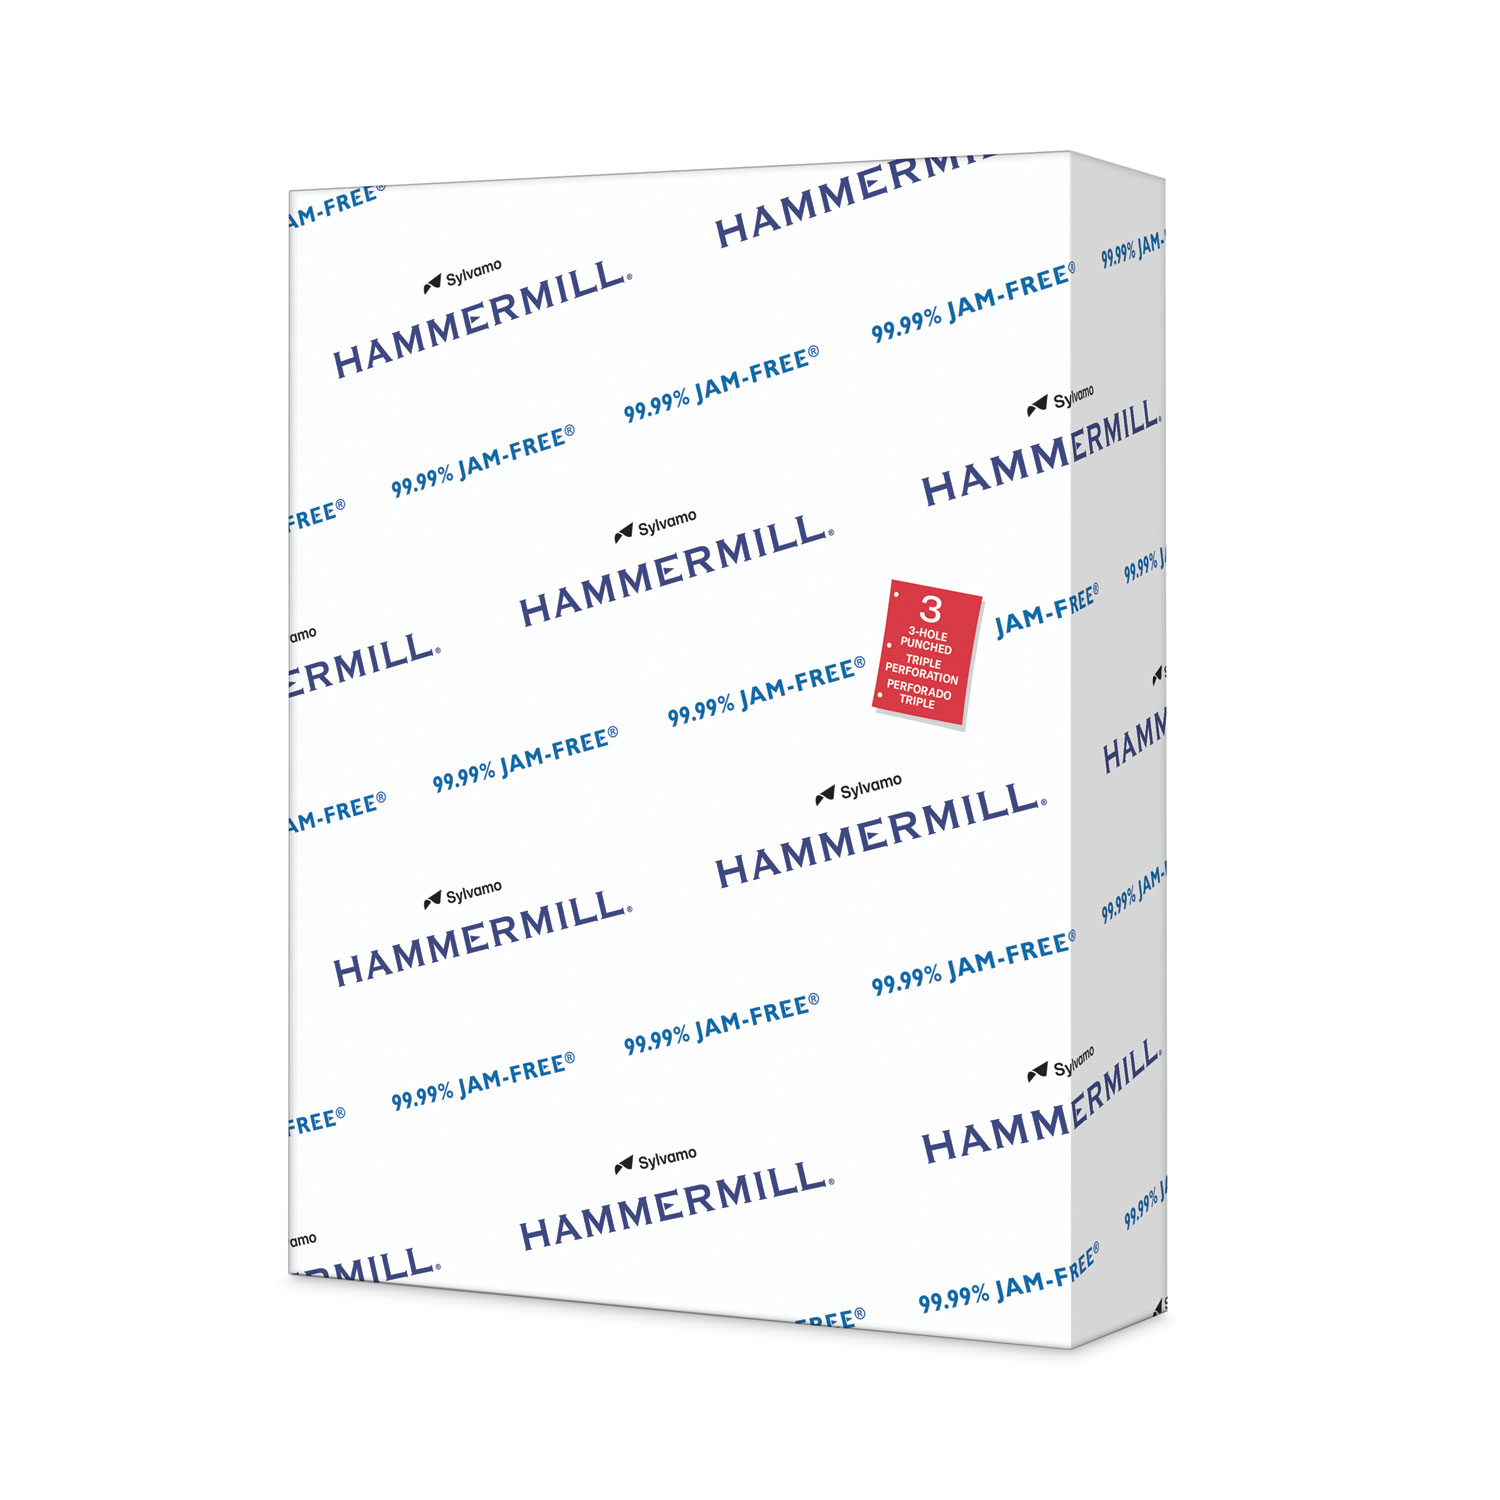 Hammermill Printer Paper, Premium Color 32 lb Copy Paper, 11 x 17 - 1 Ream  Auction